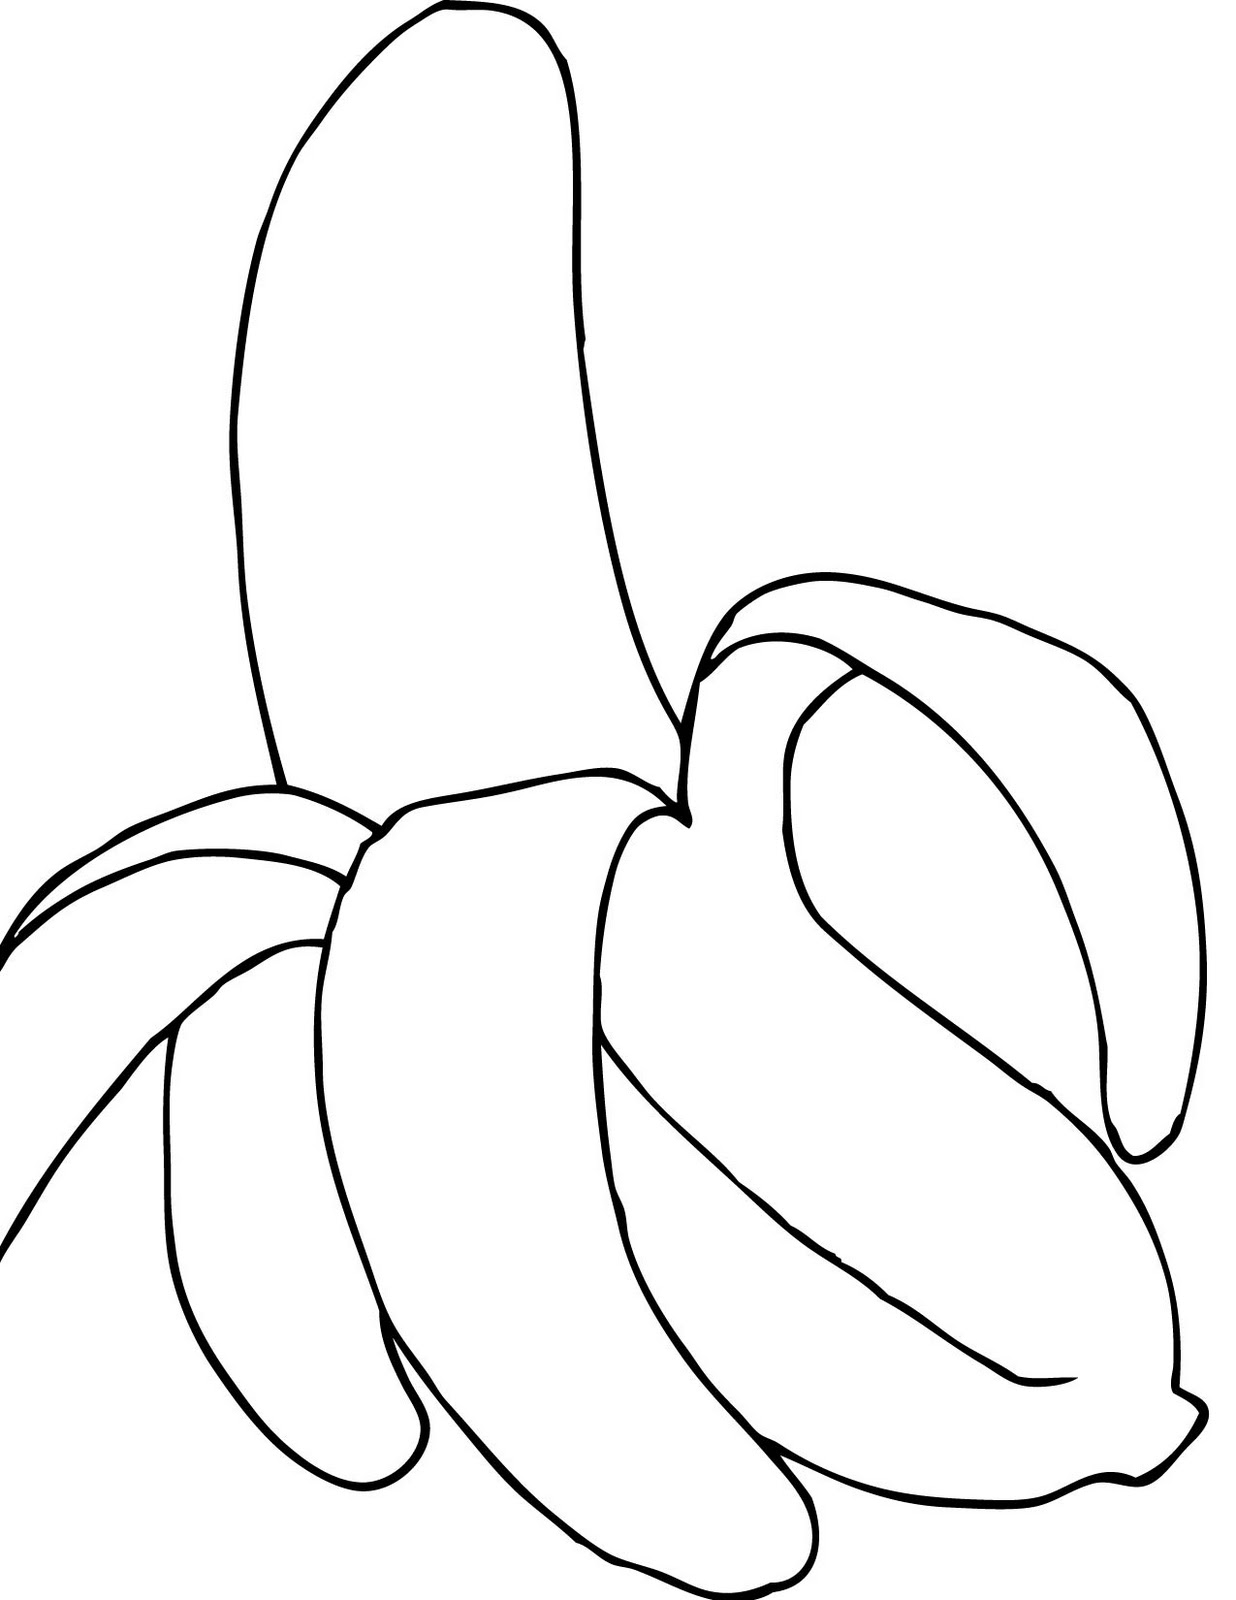 banana coloring page bunch of bananas coloring sheet coloring pages page coloring banana 